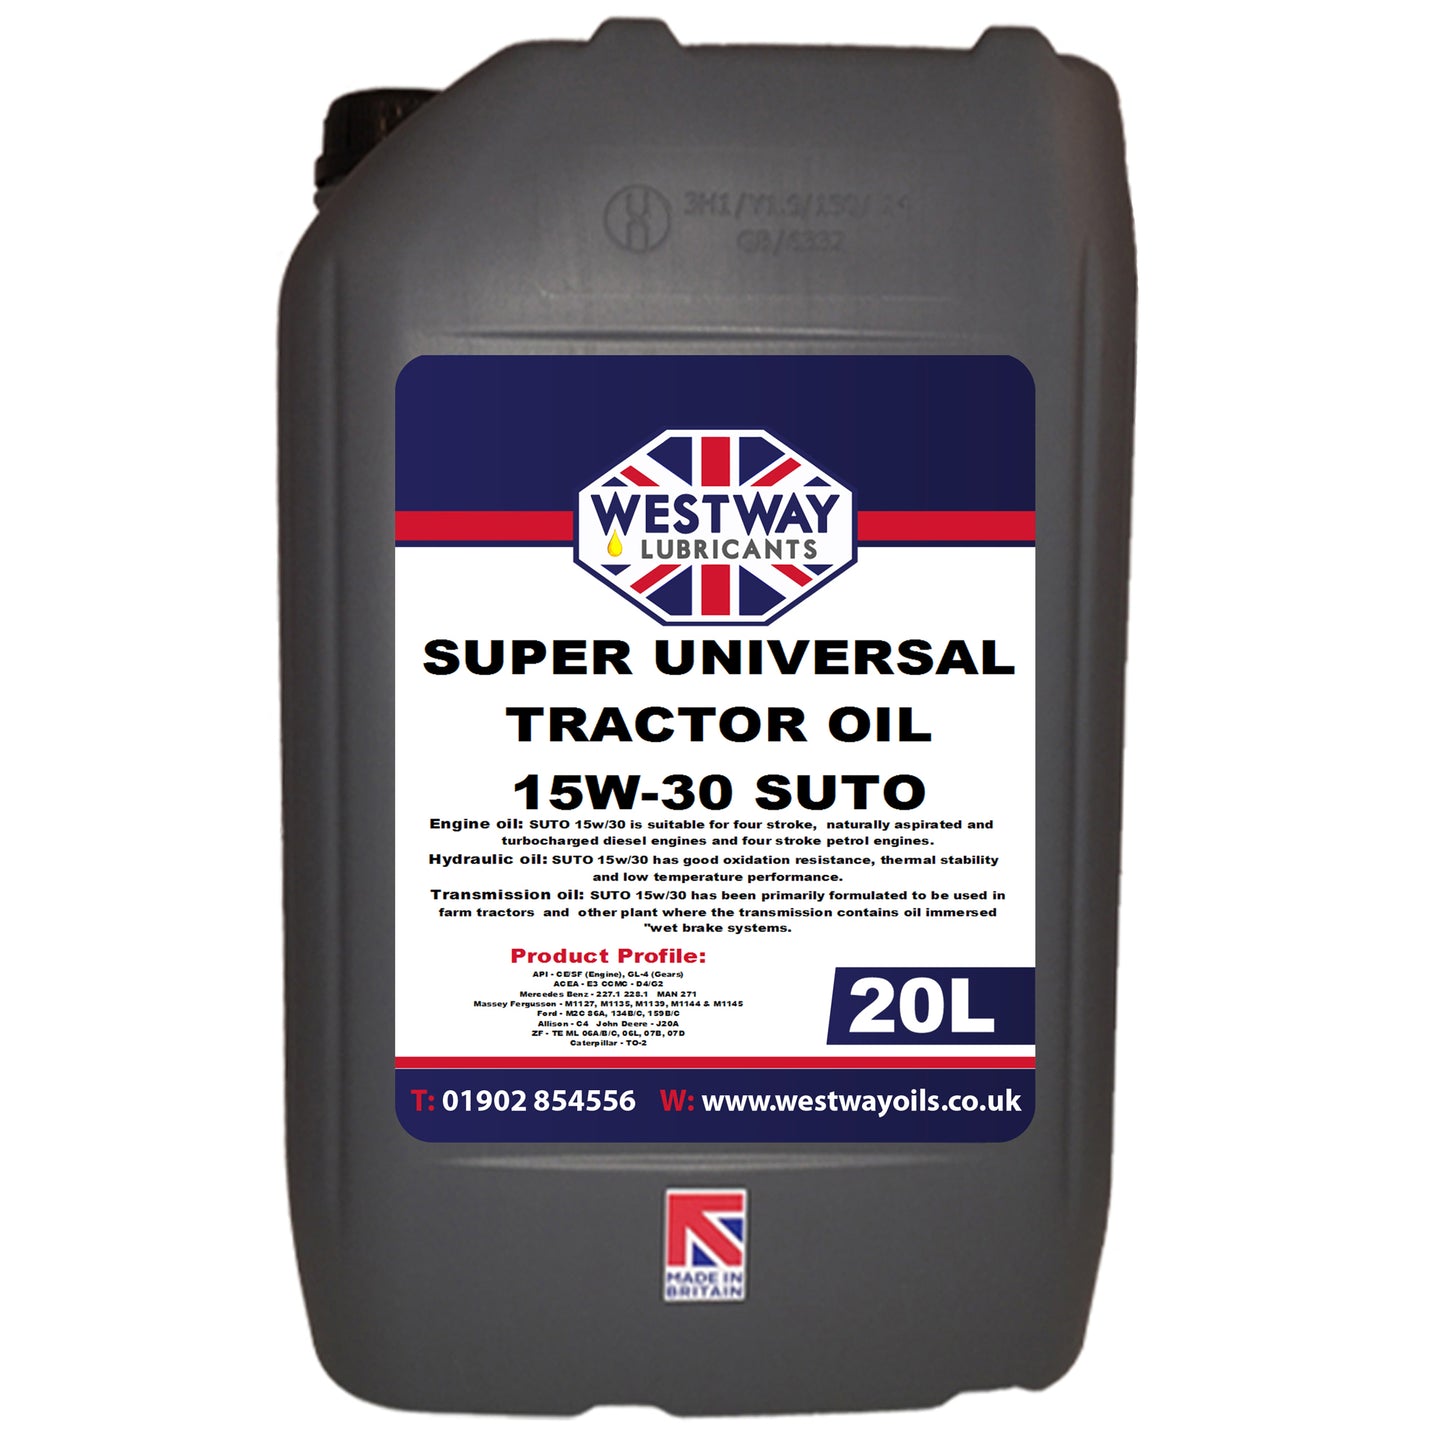 SUTO 15w30 Super Universal Tractor Oil Mineral